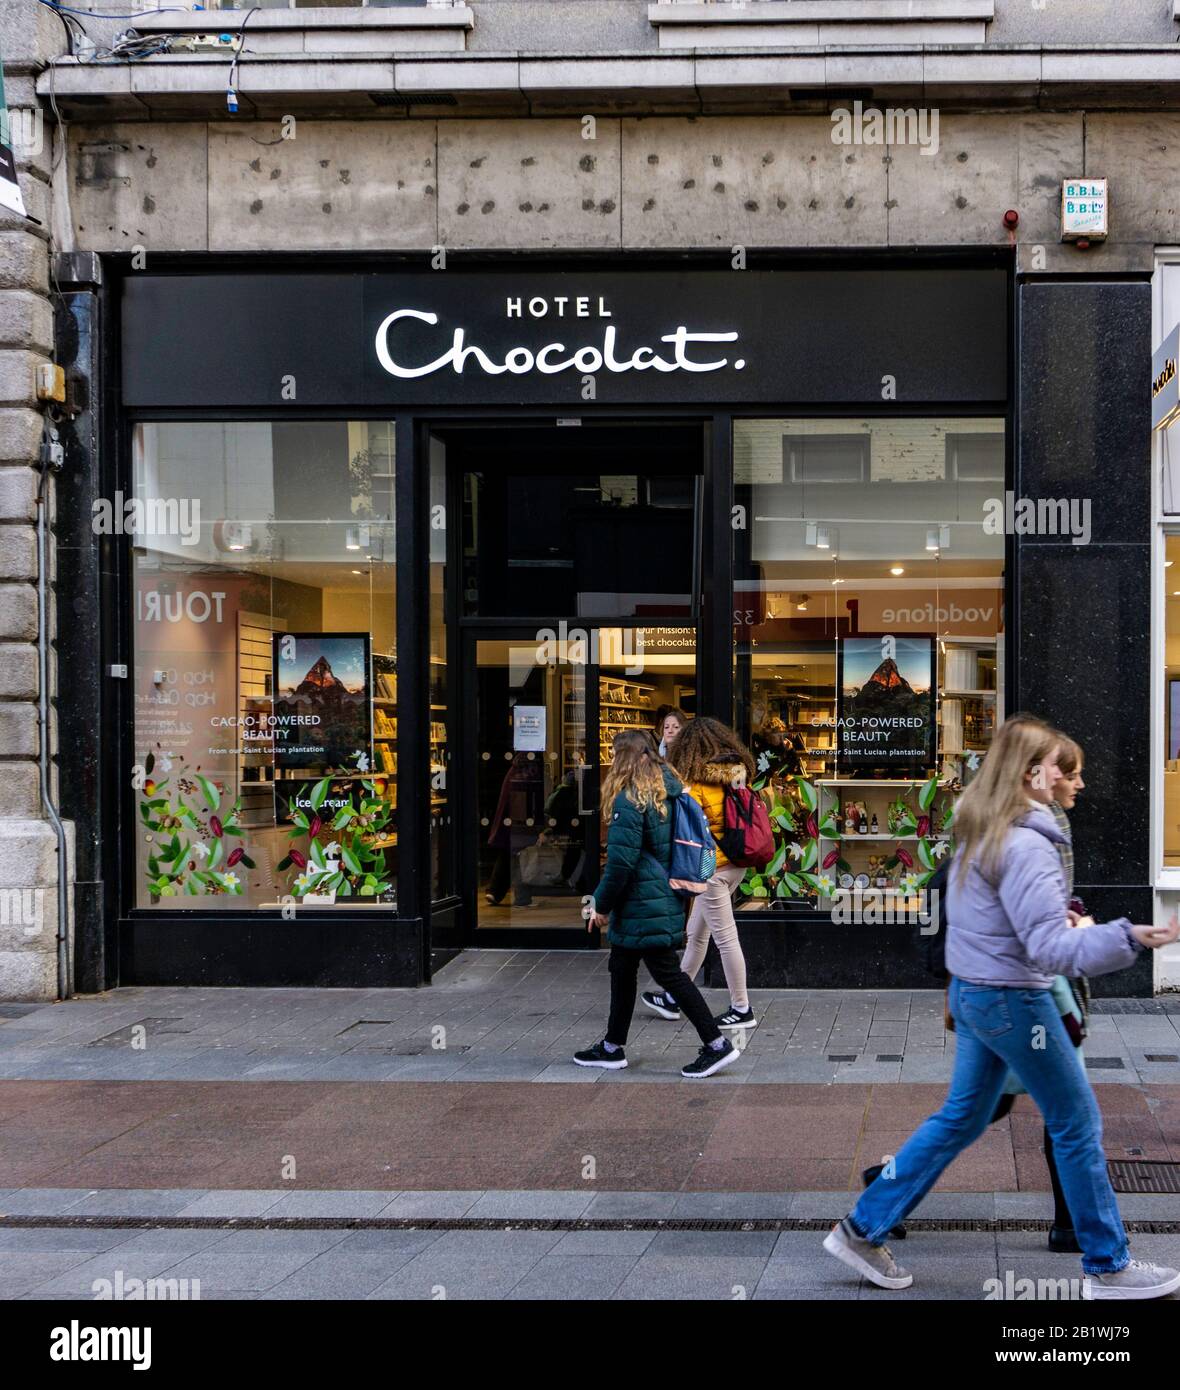 Una filiale dell'Hotel Chocolat, negozio di cioccolato, in Henry Street. Foto Stock